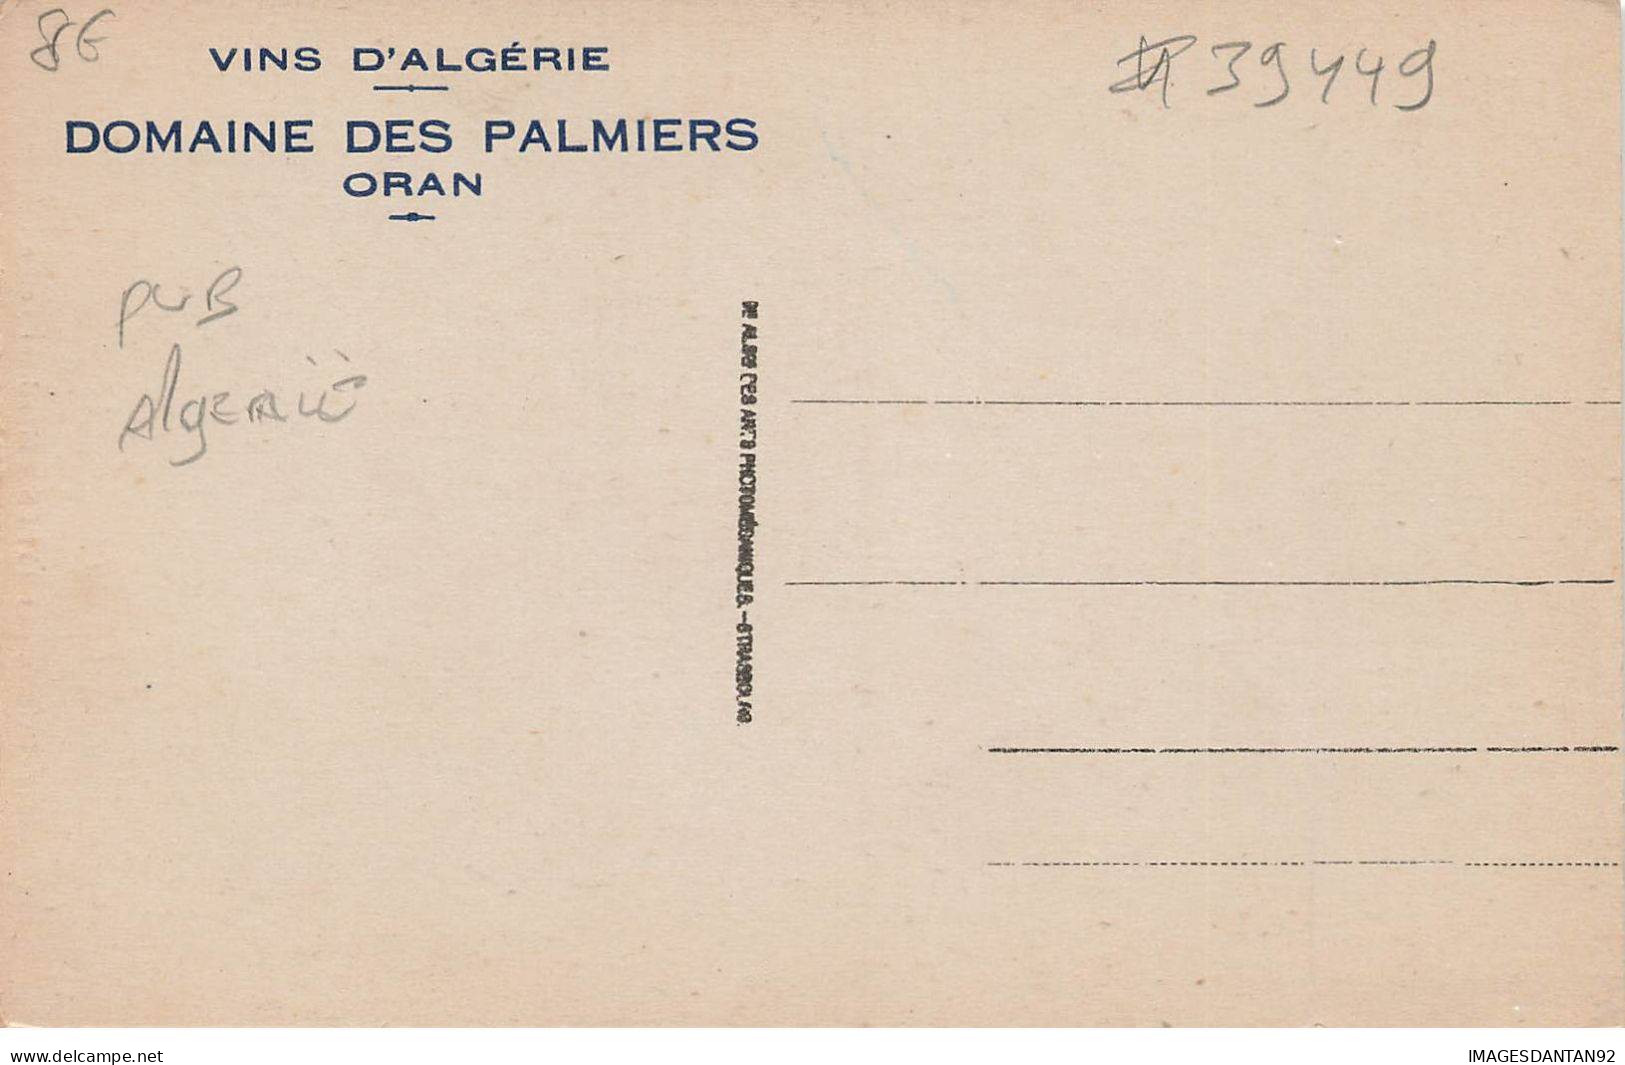 ALGERIE MK39449 MENDIANT ARABE VINS D ALGERIE DOMAINE DES PALMIERS ORAN PUBLICITE - Plaatsen